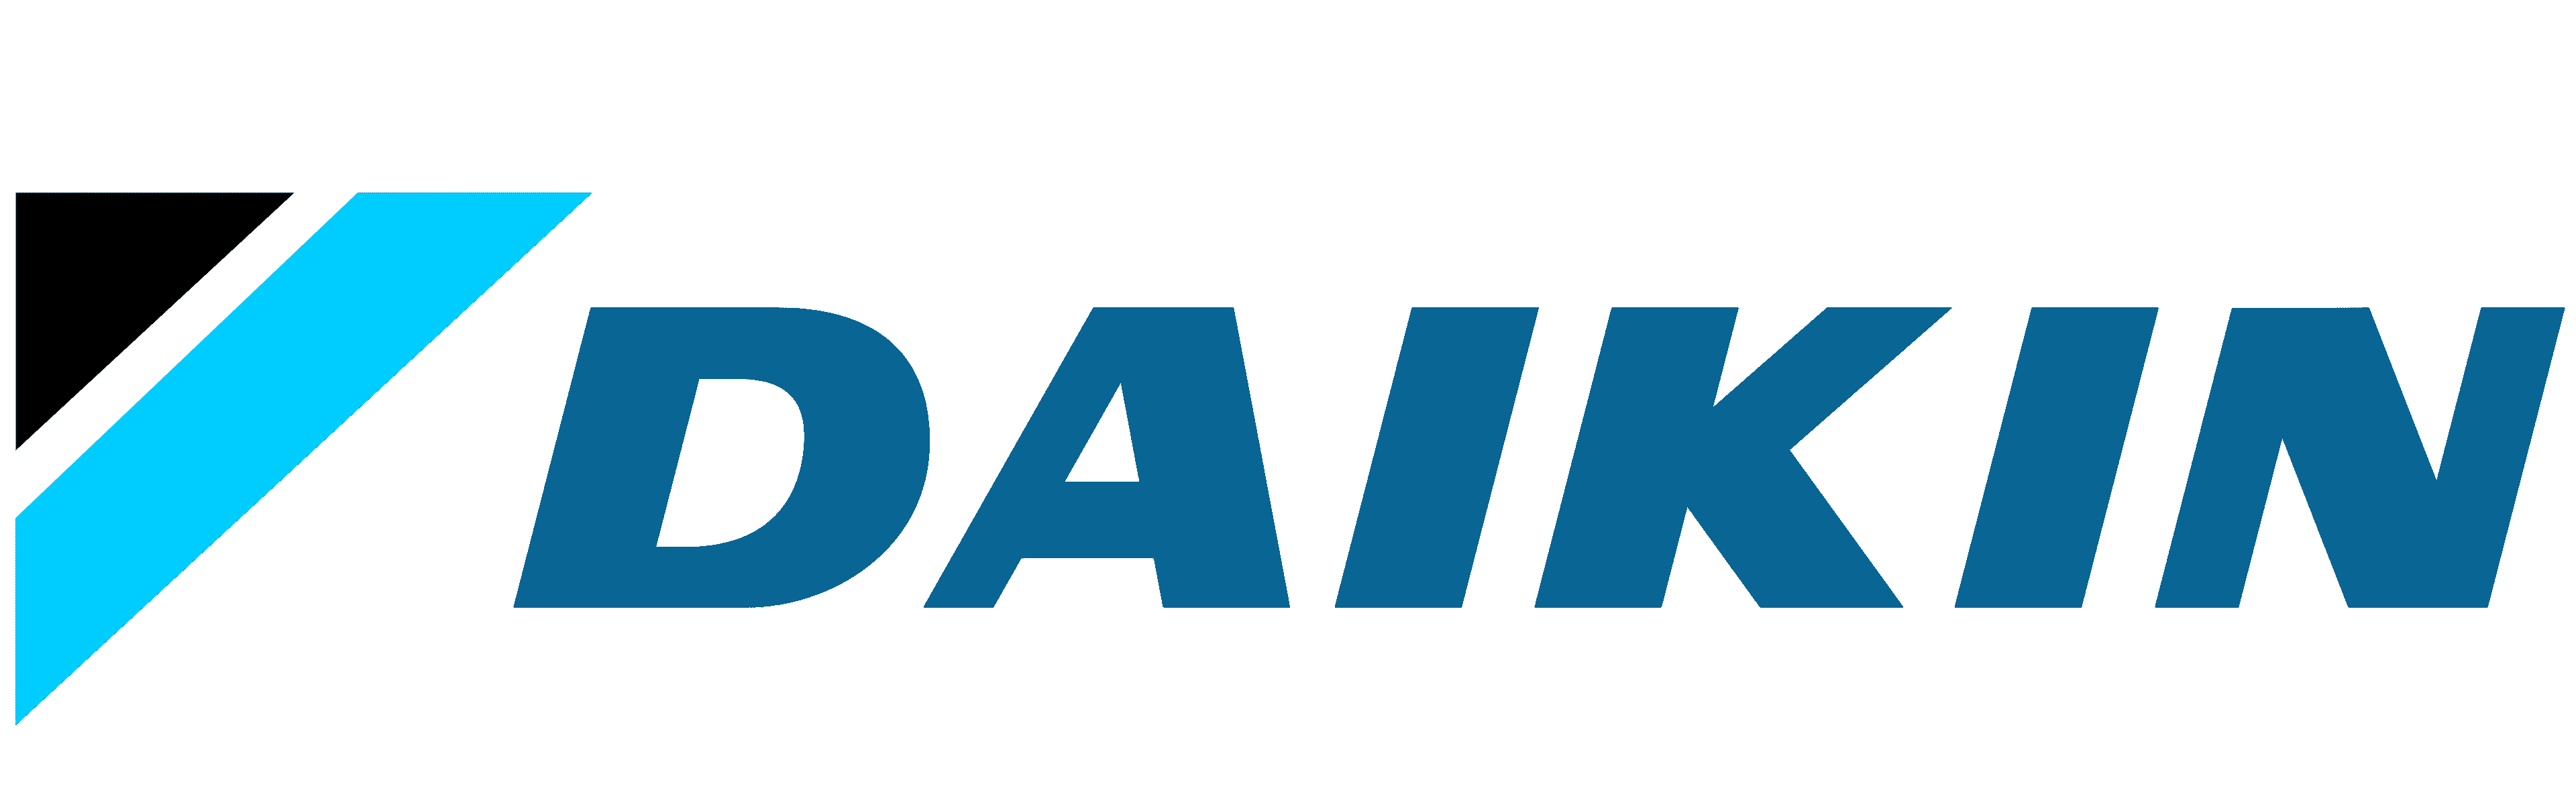 daikin heat pumps logo